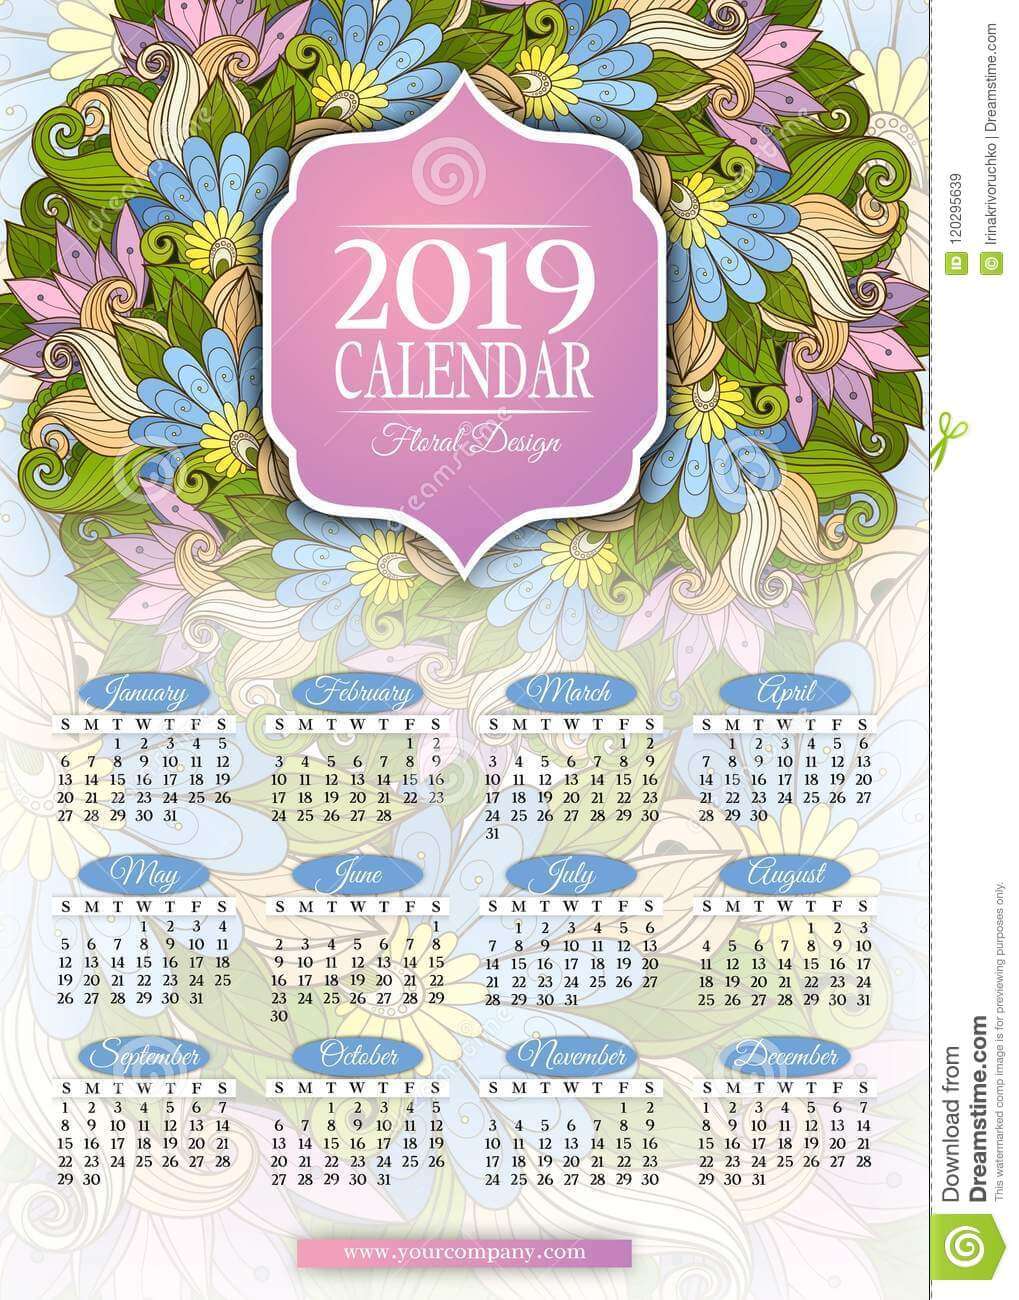 Красивые календари на 2019 год - отличная подборка 18